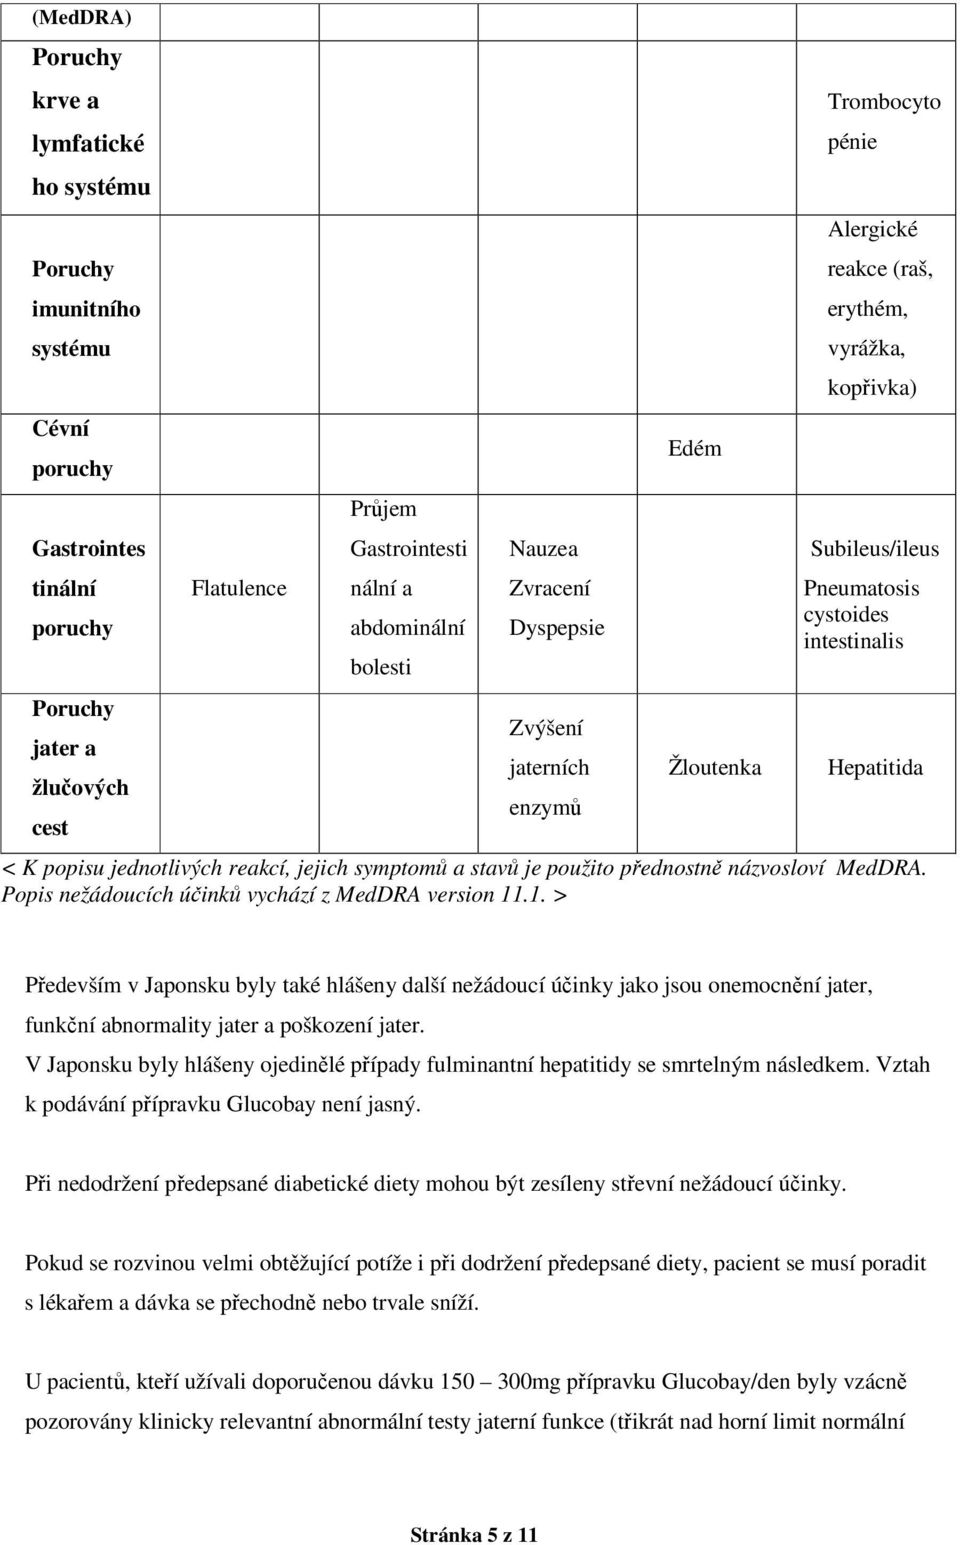 Hepatitida < K popisu jednotlivých reakcí, jejich symptomů a stavů je použito přednostně názvosloví MedDRA. Popis nežádoucích účinků vychází z MedDRA version 11